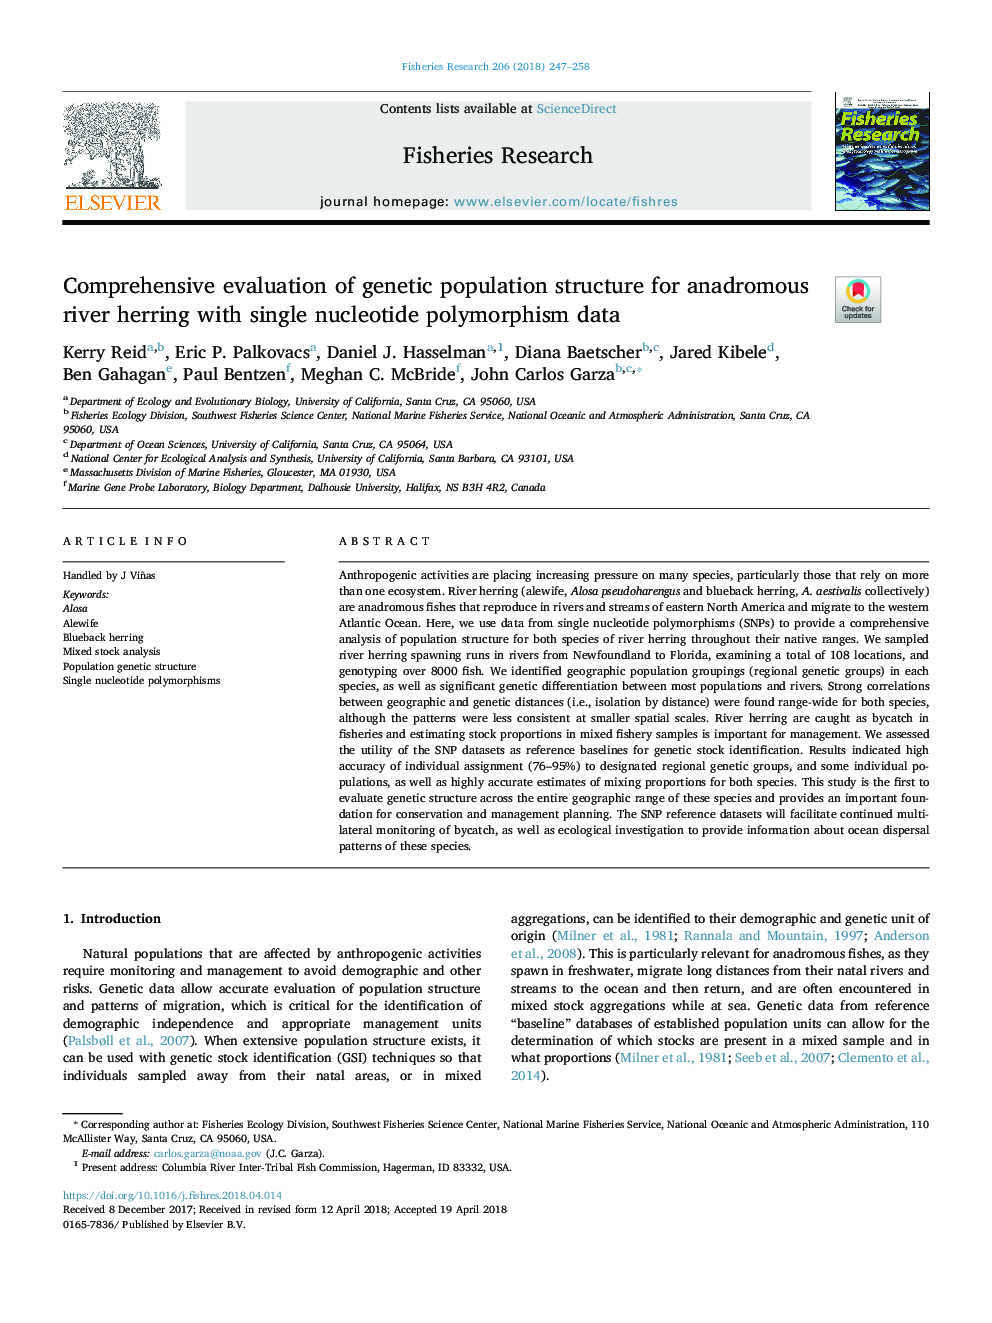 ارزیابی جامع از ساختار جمعیت ژنتیکی برای شاه ماهی رودخوار رودخانه با داده های پلیمورفیسم تک 